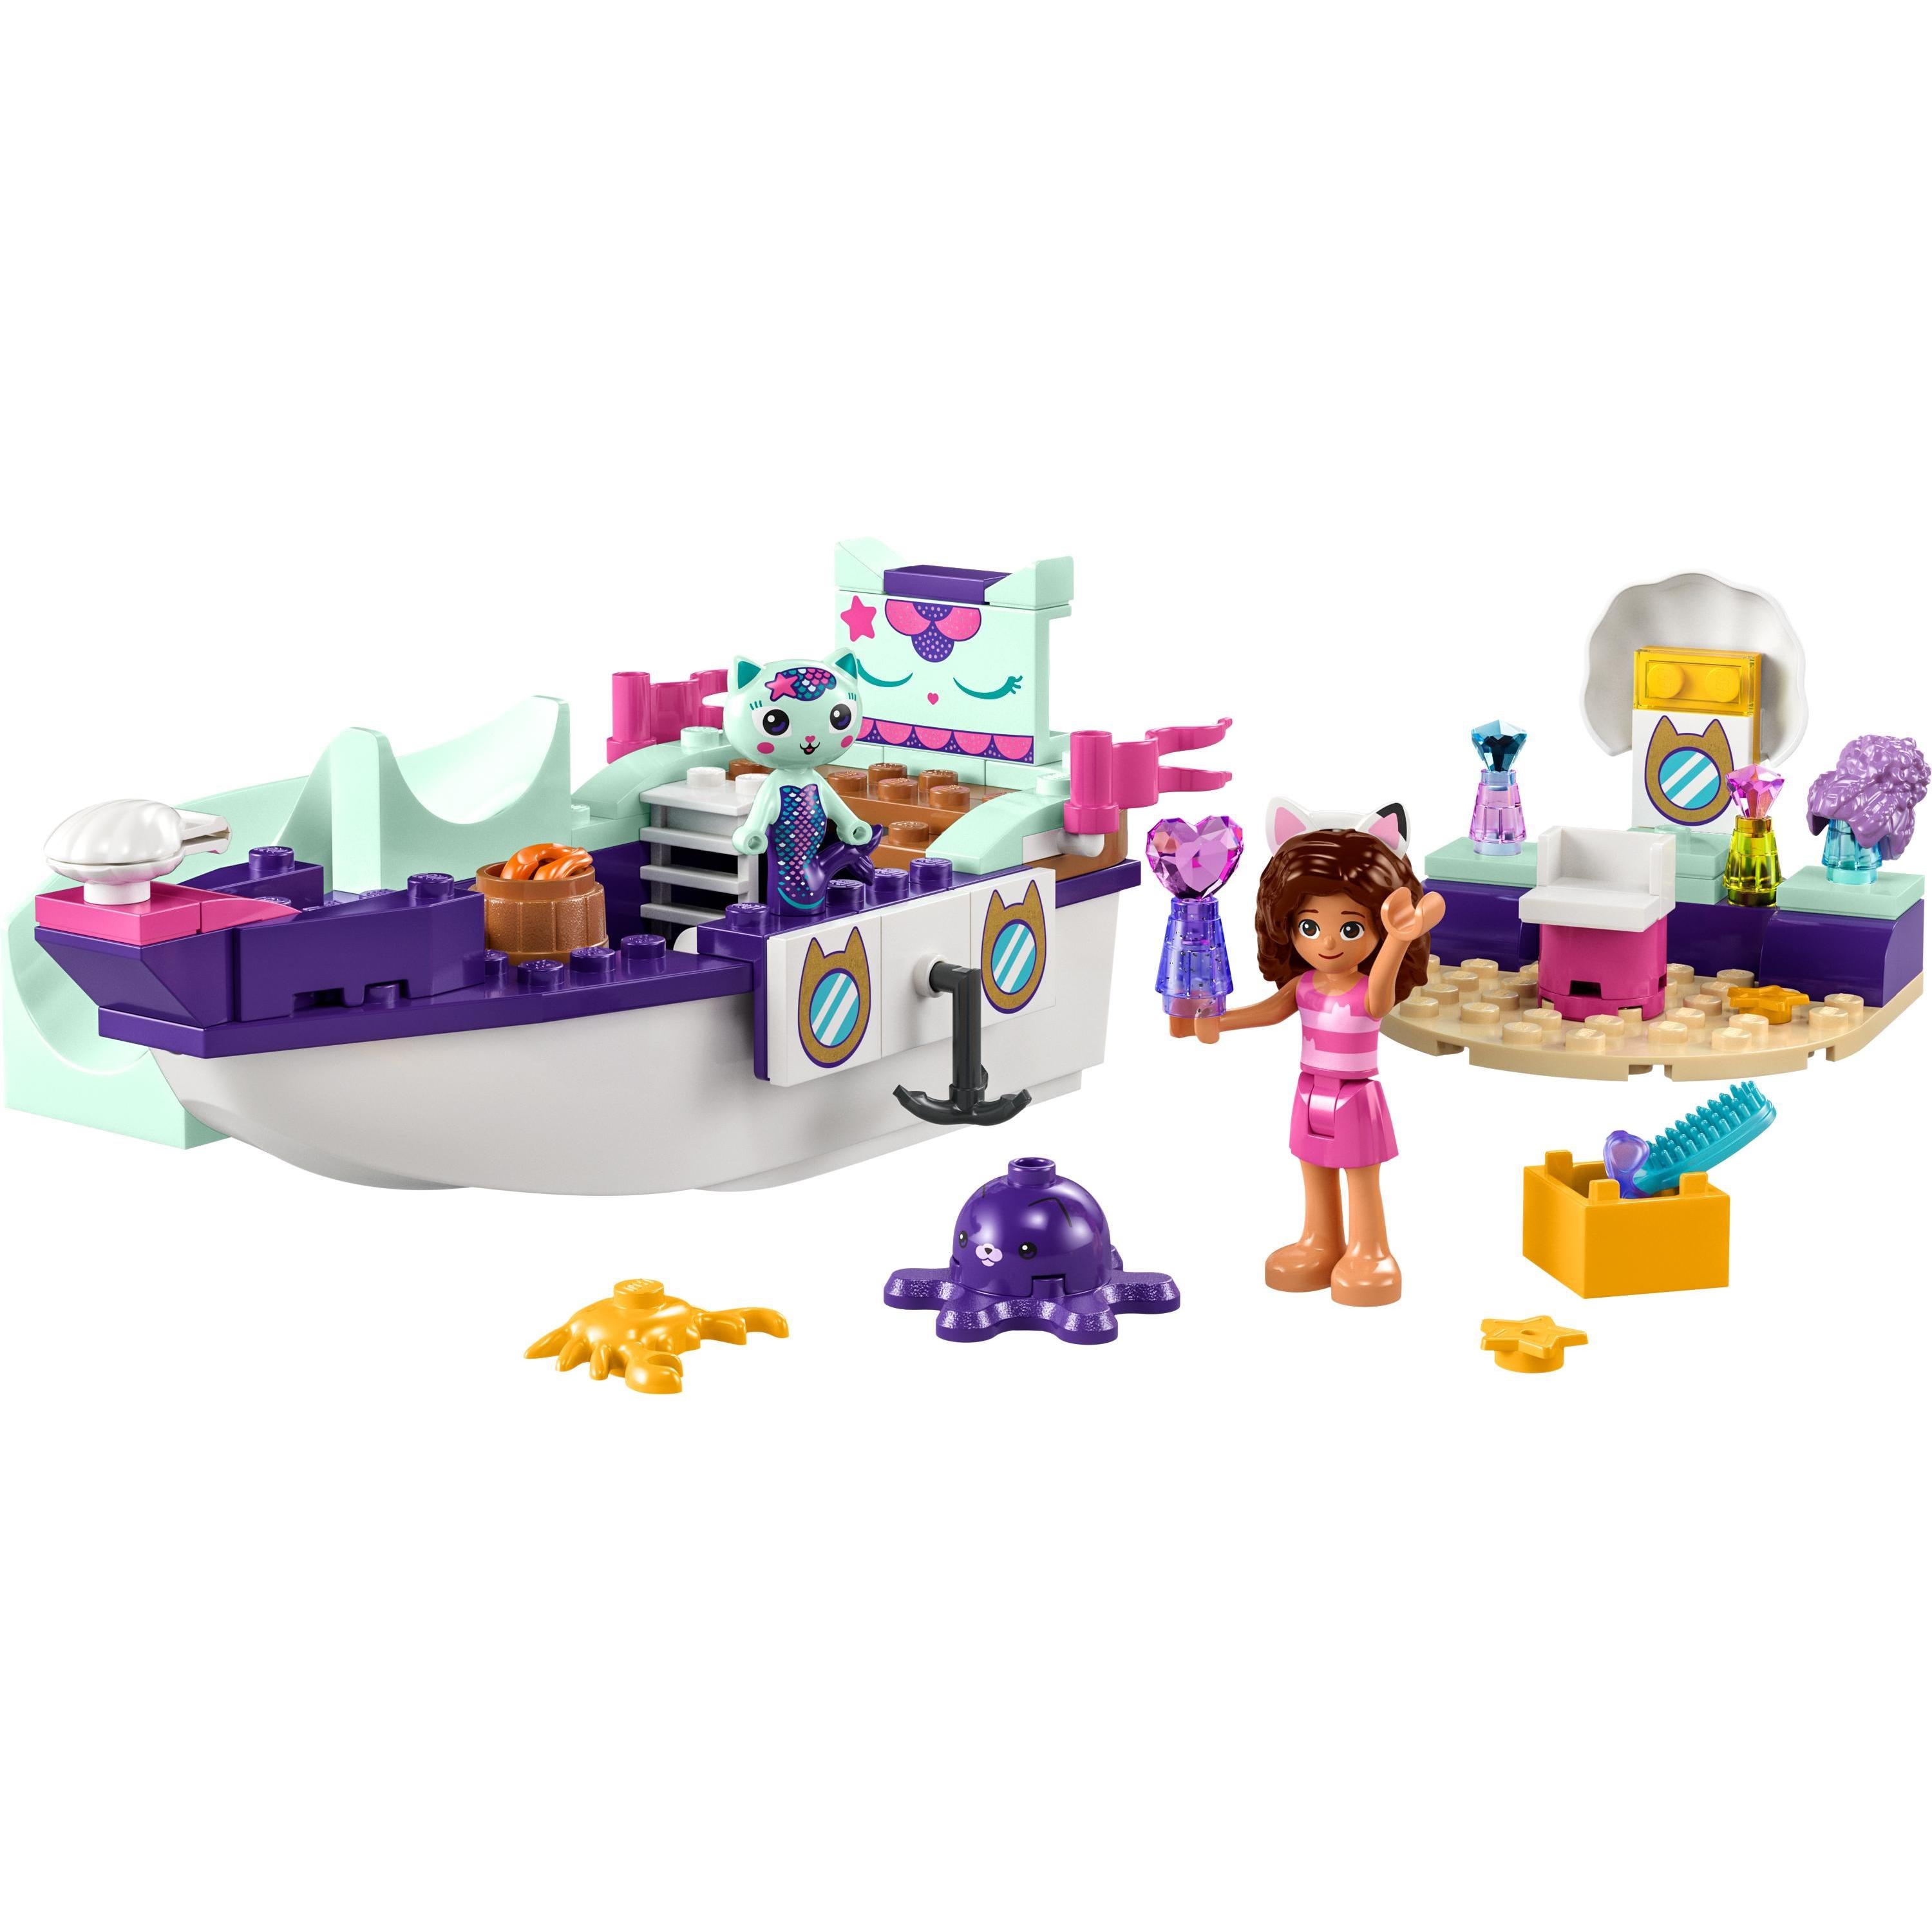 LEGO® Gabby’s Dollhouse – Gabby & MerCat's Ship & Spa | 10786